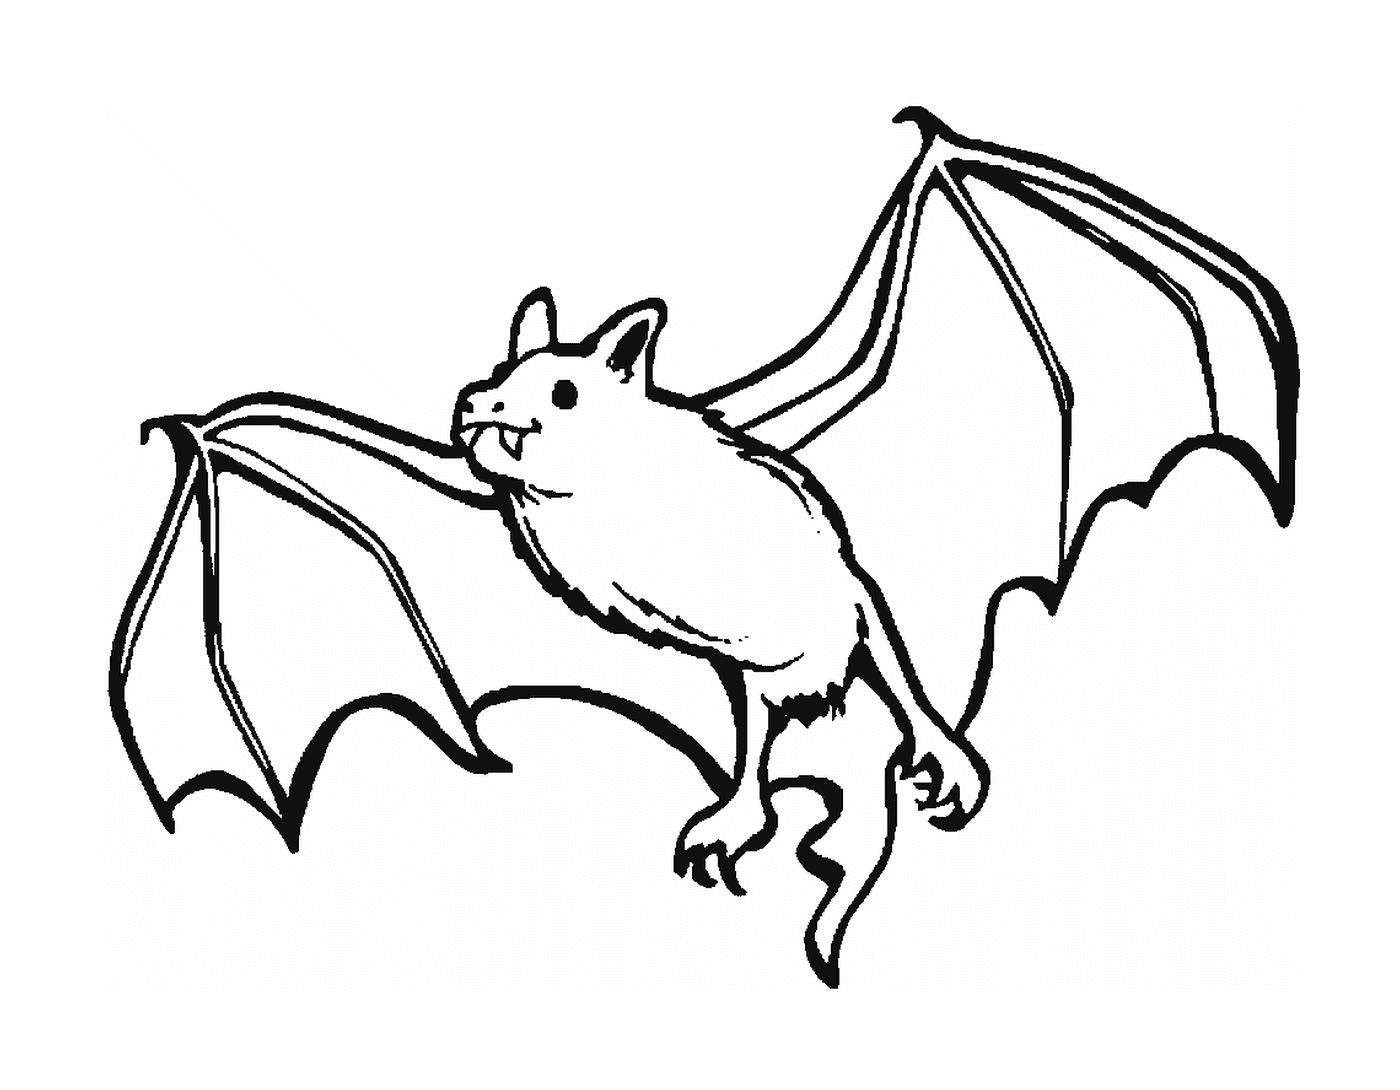  Pipistrello vampiro 